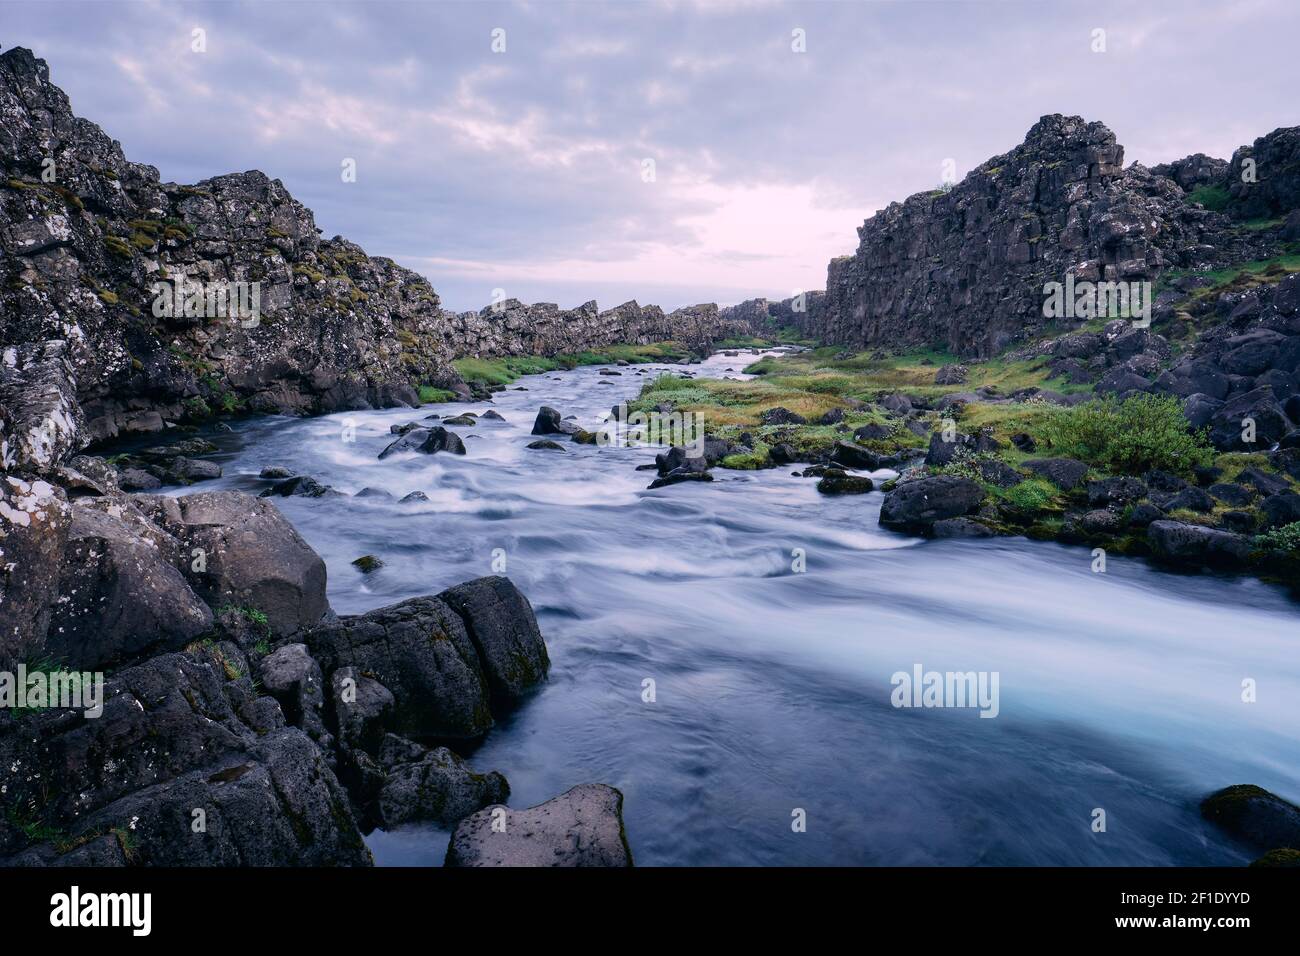 La rivière Oxara site classé au patrimoine mondial de l'UNESCO Pingvellir / Thingvellir Parc national sur le Mid Atlantic Ridge Islande Europe - Paysage fluvial de l'Islande Banque D'Images